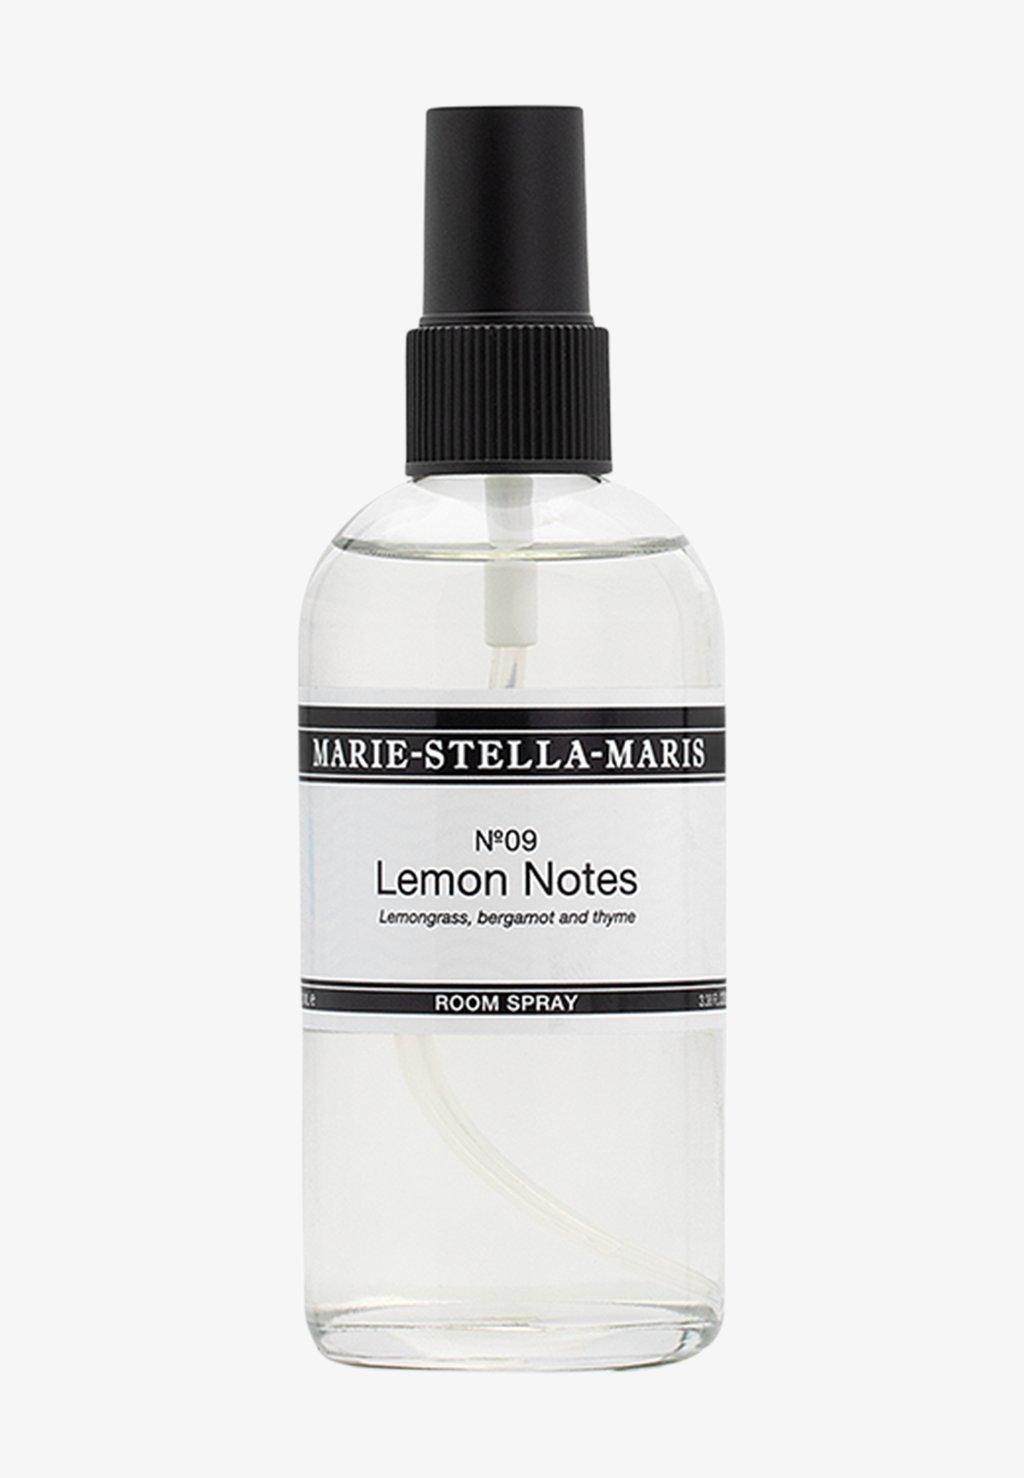 Аромат для комнаты Room Spray Lemon Notes 100 Ml Marie-Stella-Maris